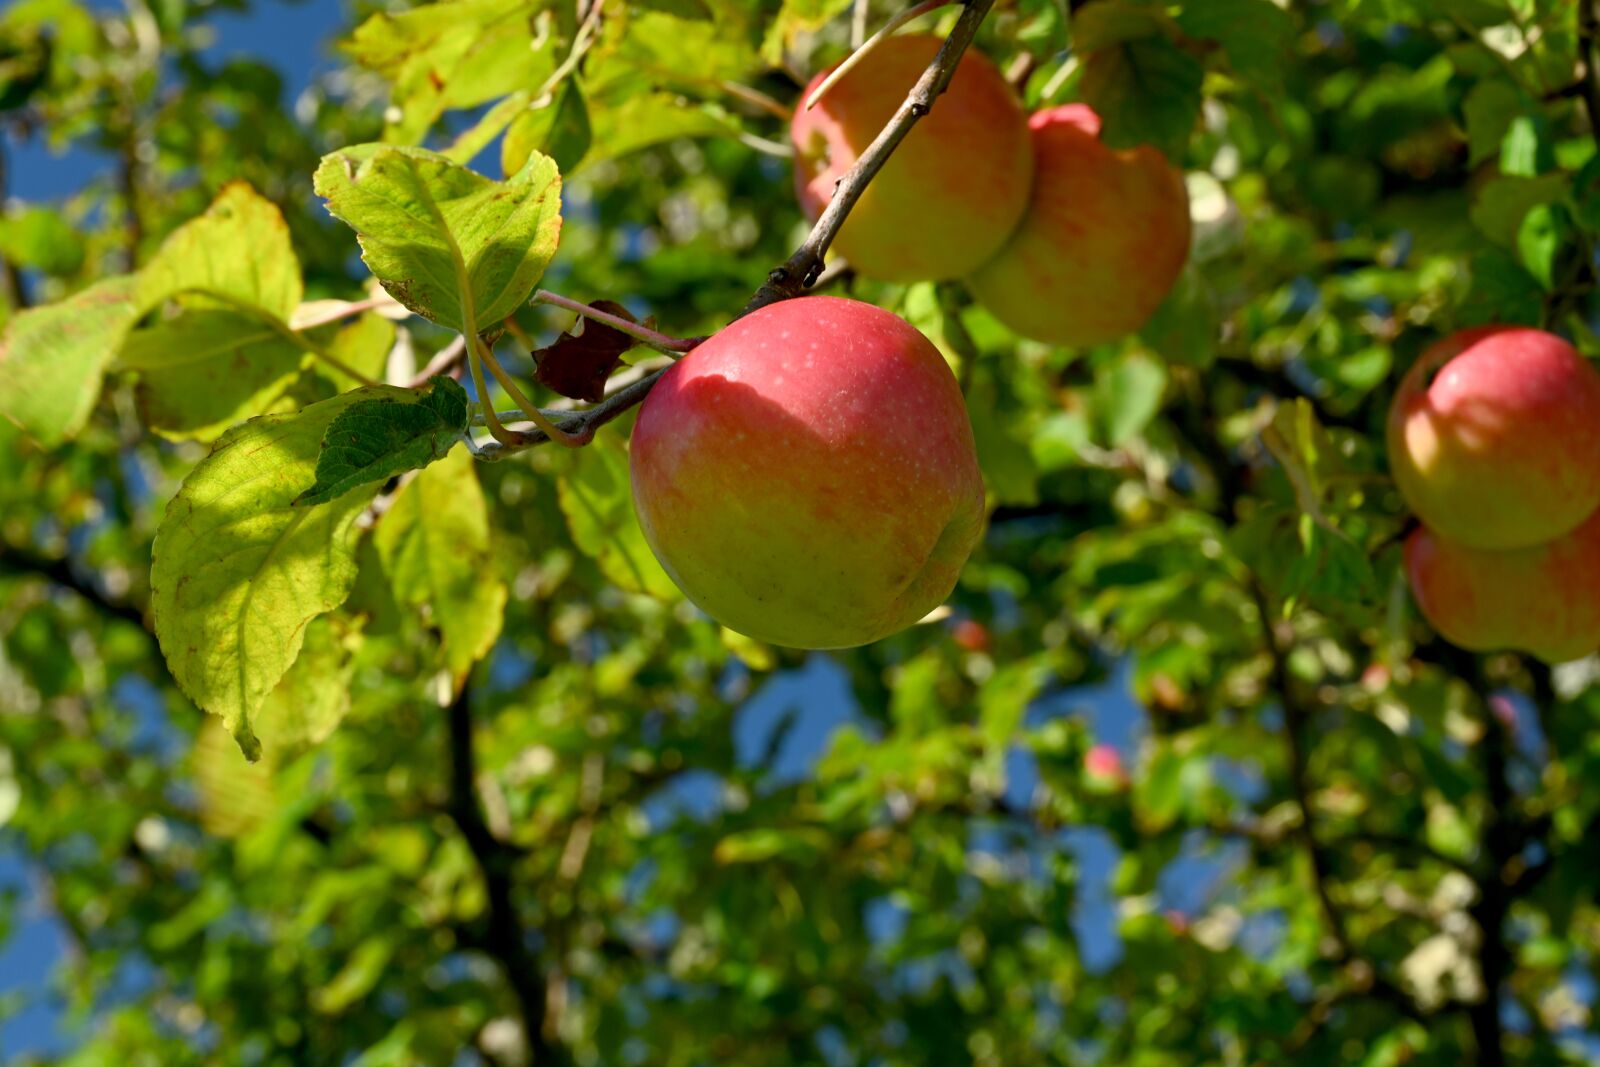 Nikon Z7 + Nikon Nikkor Z 24-70mm F4 S sample photo. Apples, apple tree, tree photography